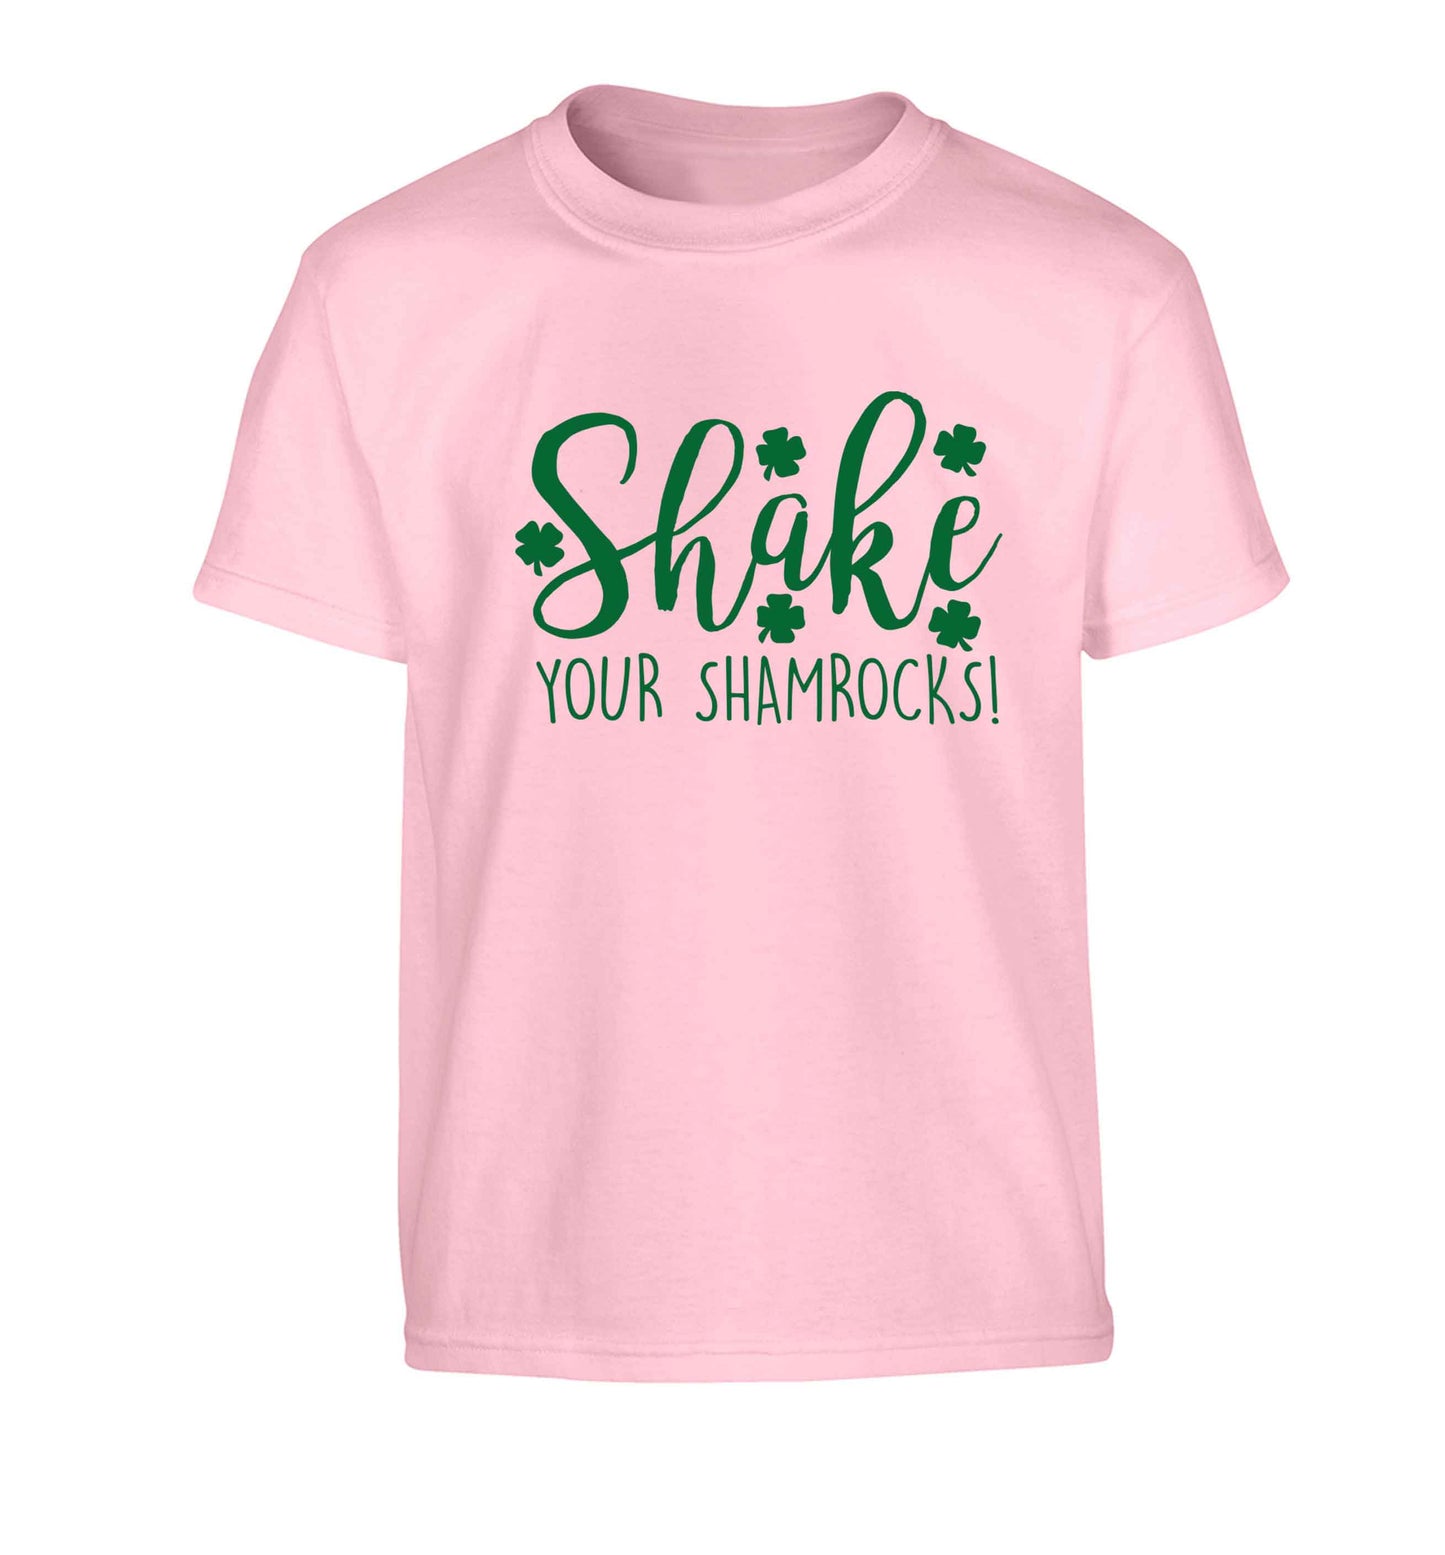 Shake your shamrocks Children's light pink Tshirt 12-13 Years